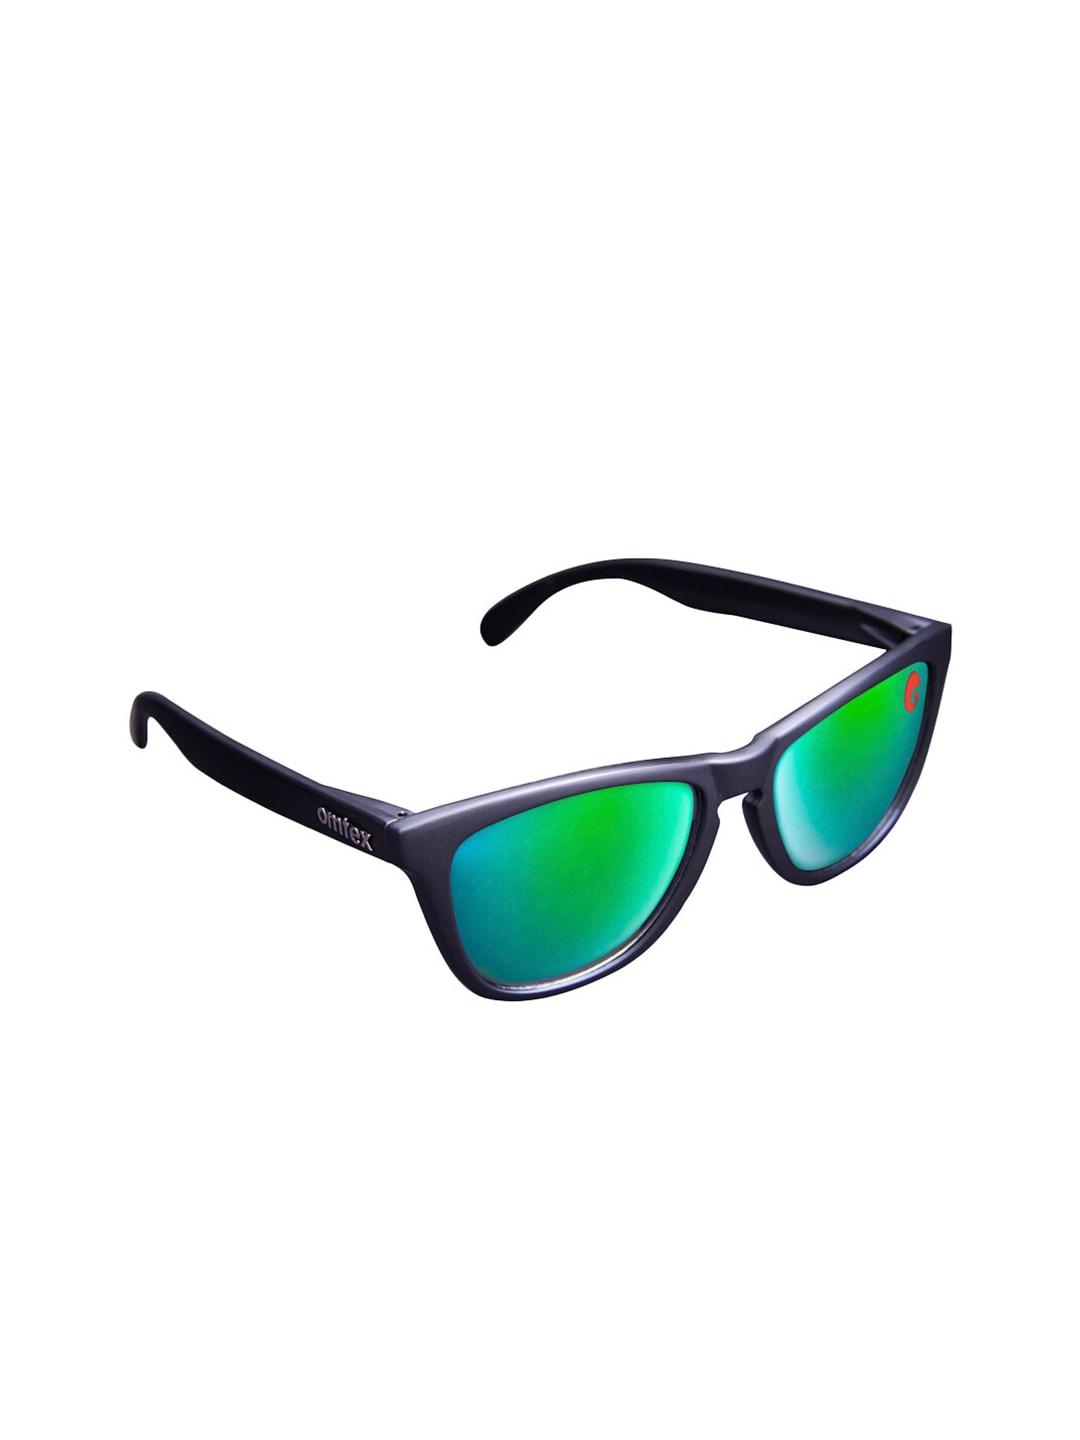 omtex men green lens & black aviator sunglasses with uv protected lens